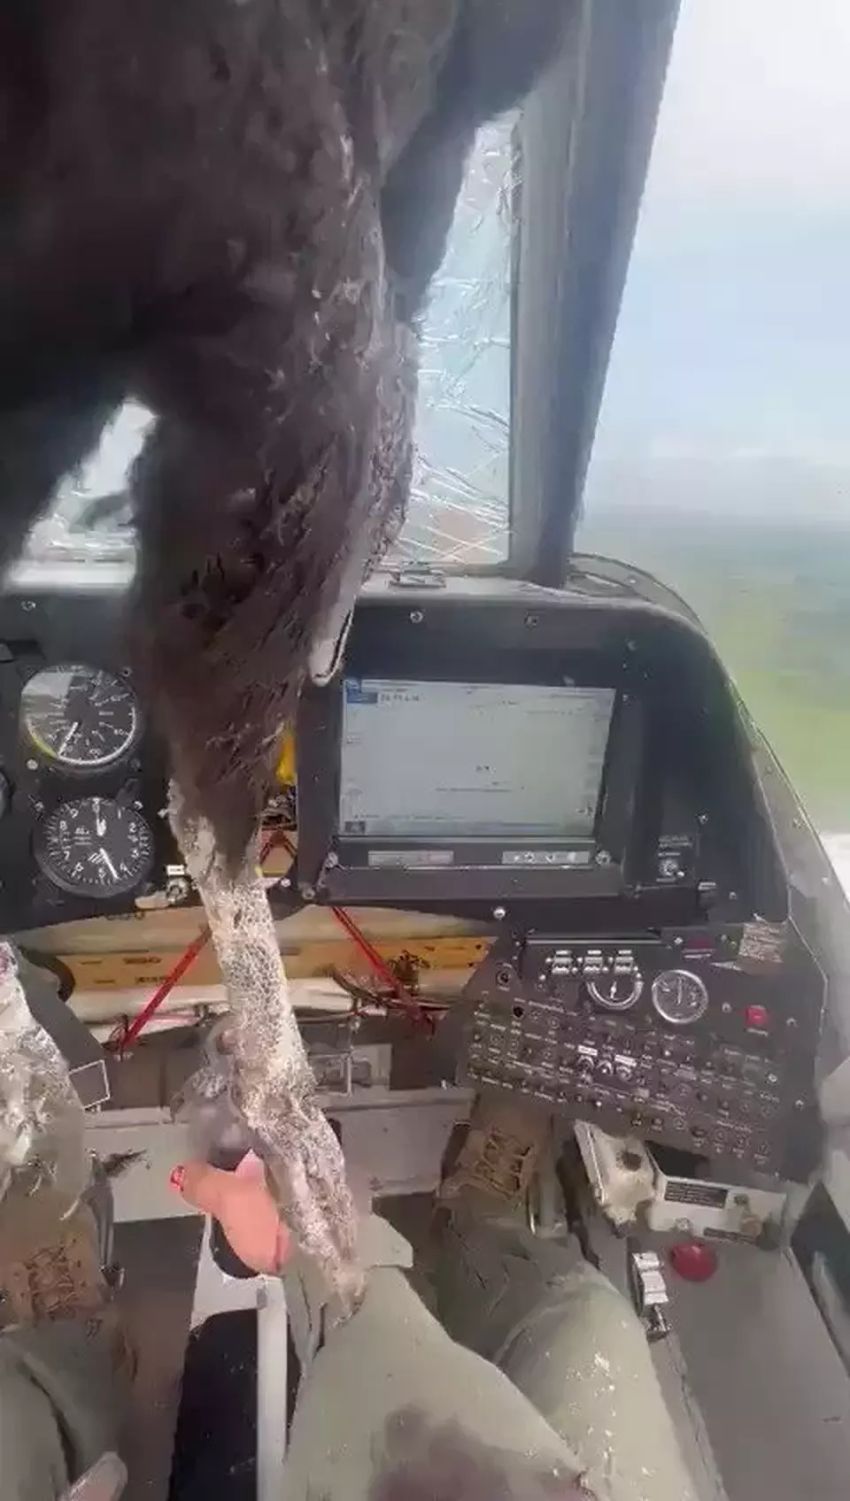 Burung Raksasa Tabrak Kaca Depan Pesawat, Pilot Berhasil Mendarat Darurat Meski Berlumuran Darah